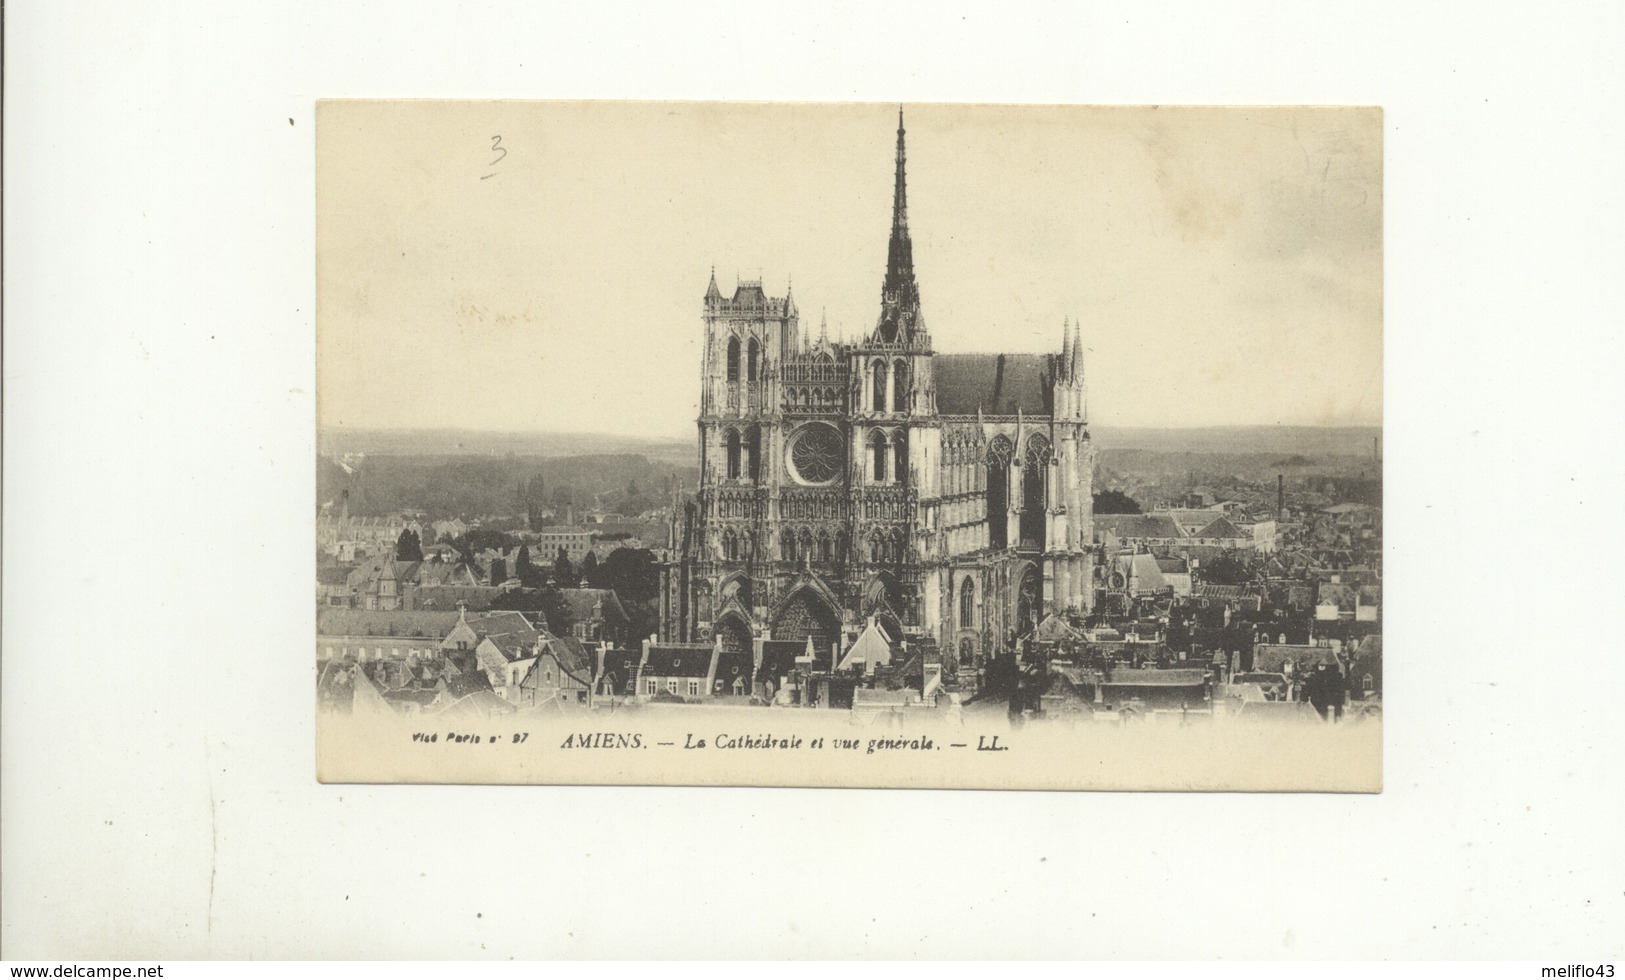 Amiens - Lot n° 8 de 10 CPA  (Toutes scannées) (1 voyagée en 1899)